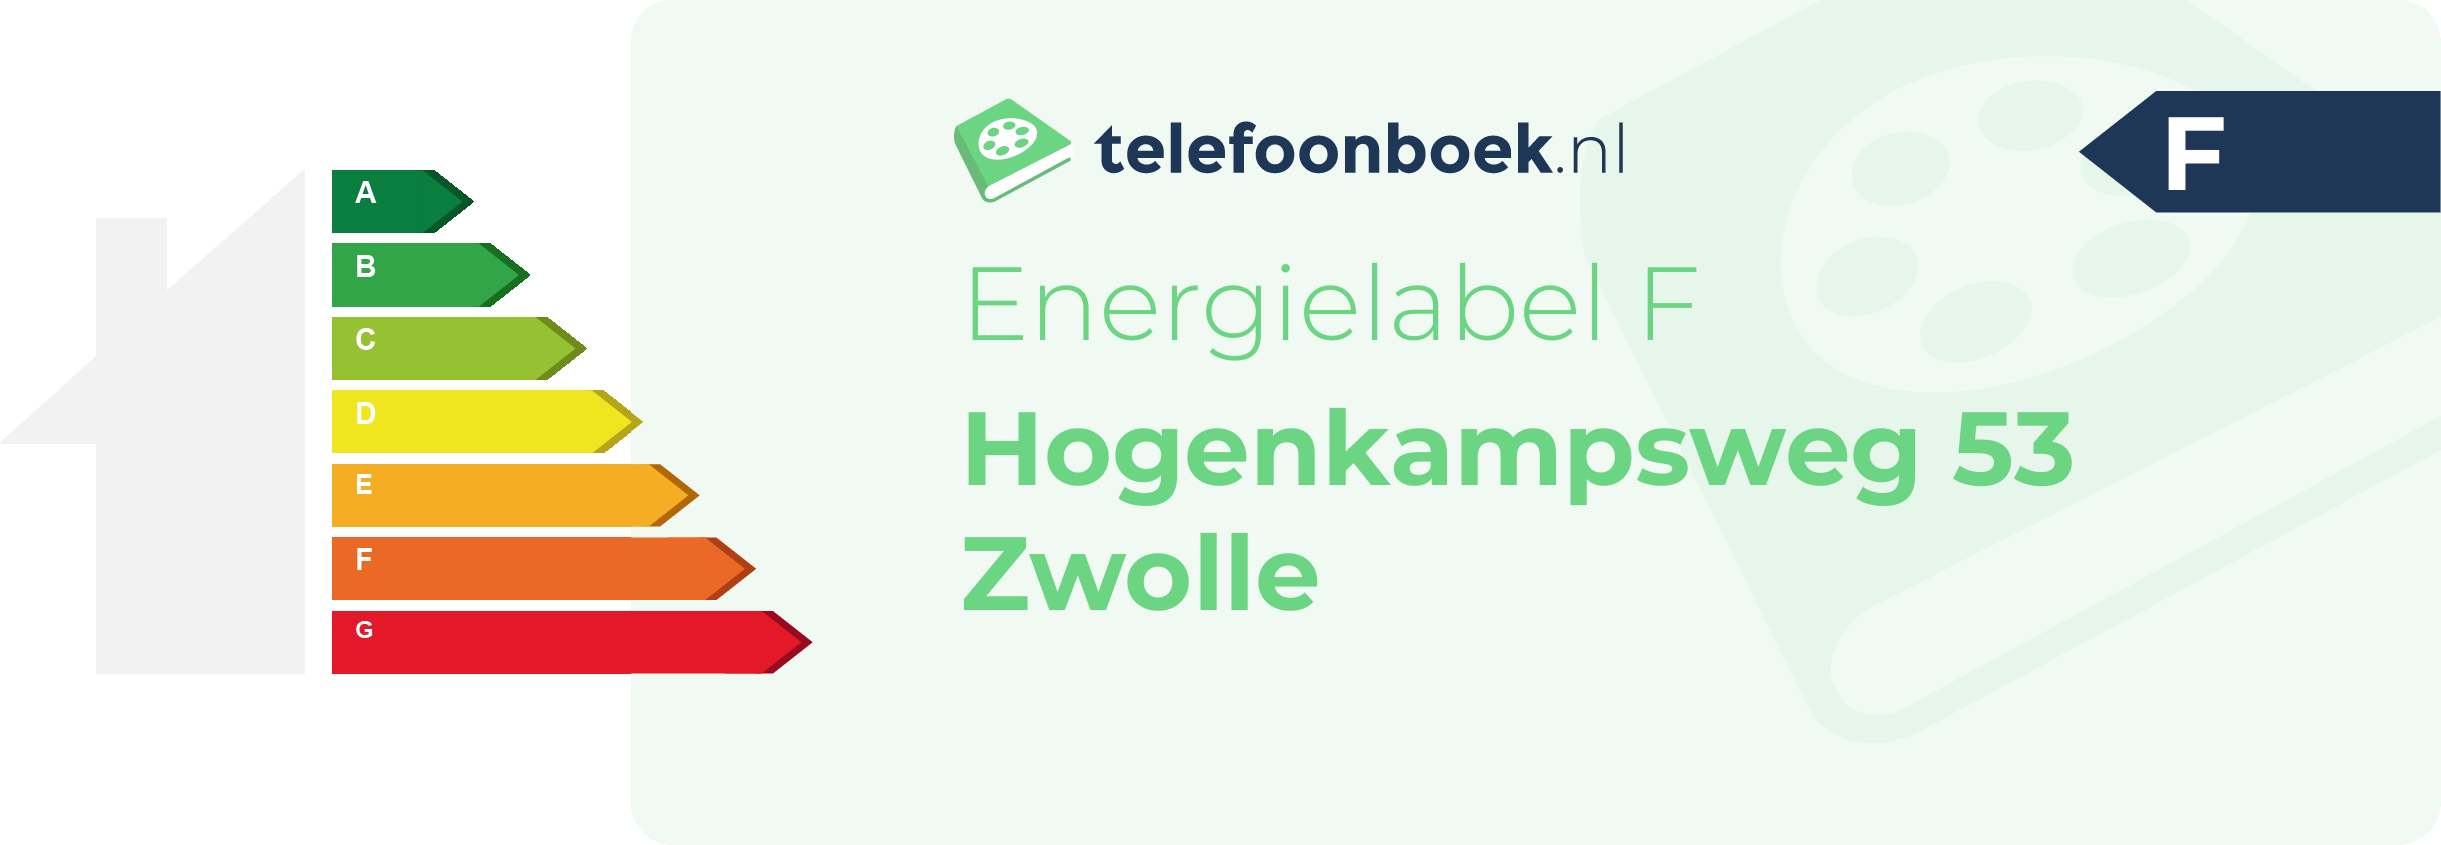 Energielabel Hogenkampsweg 53 Zwolle